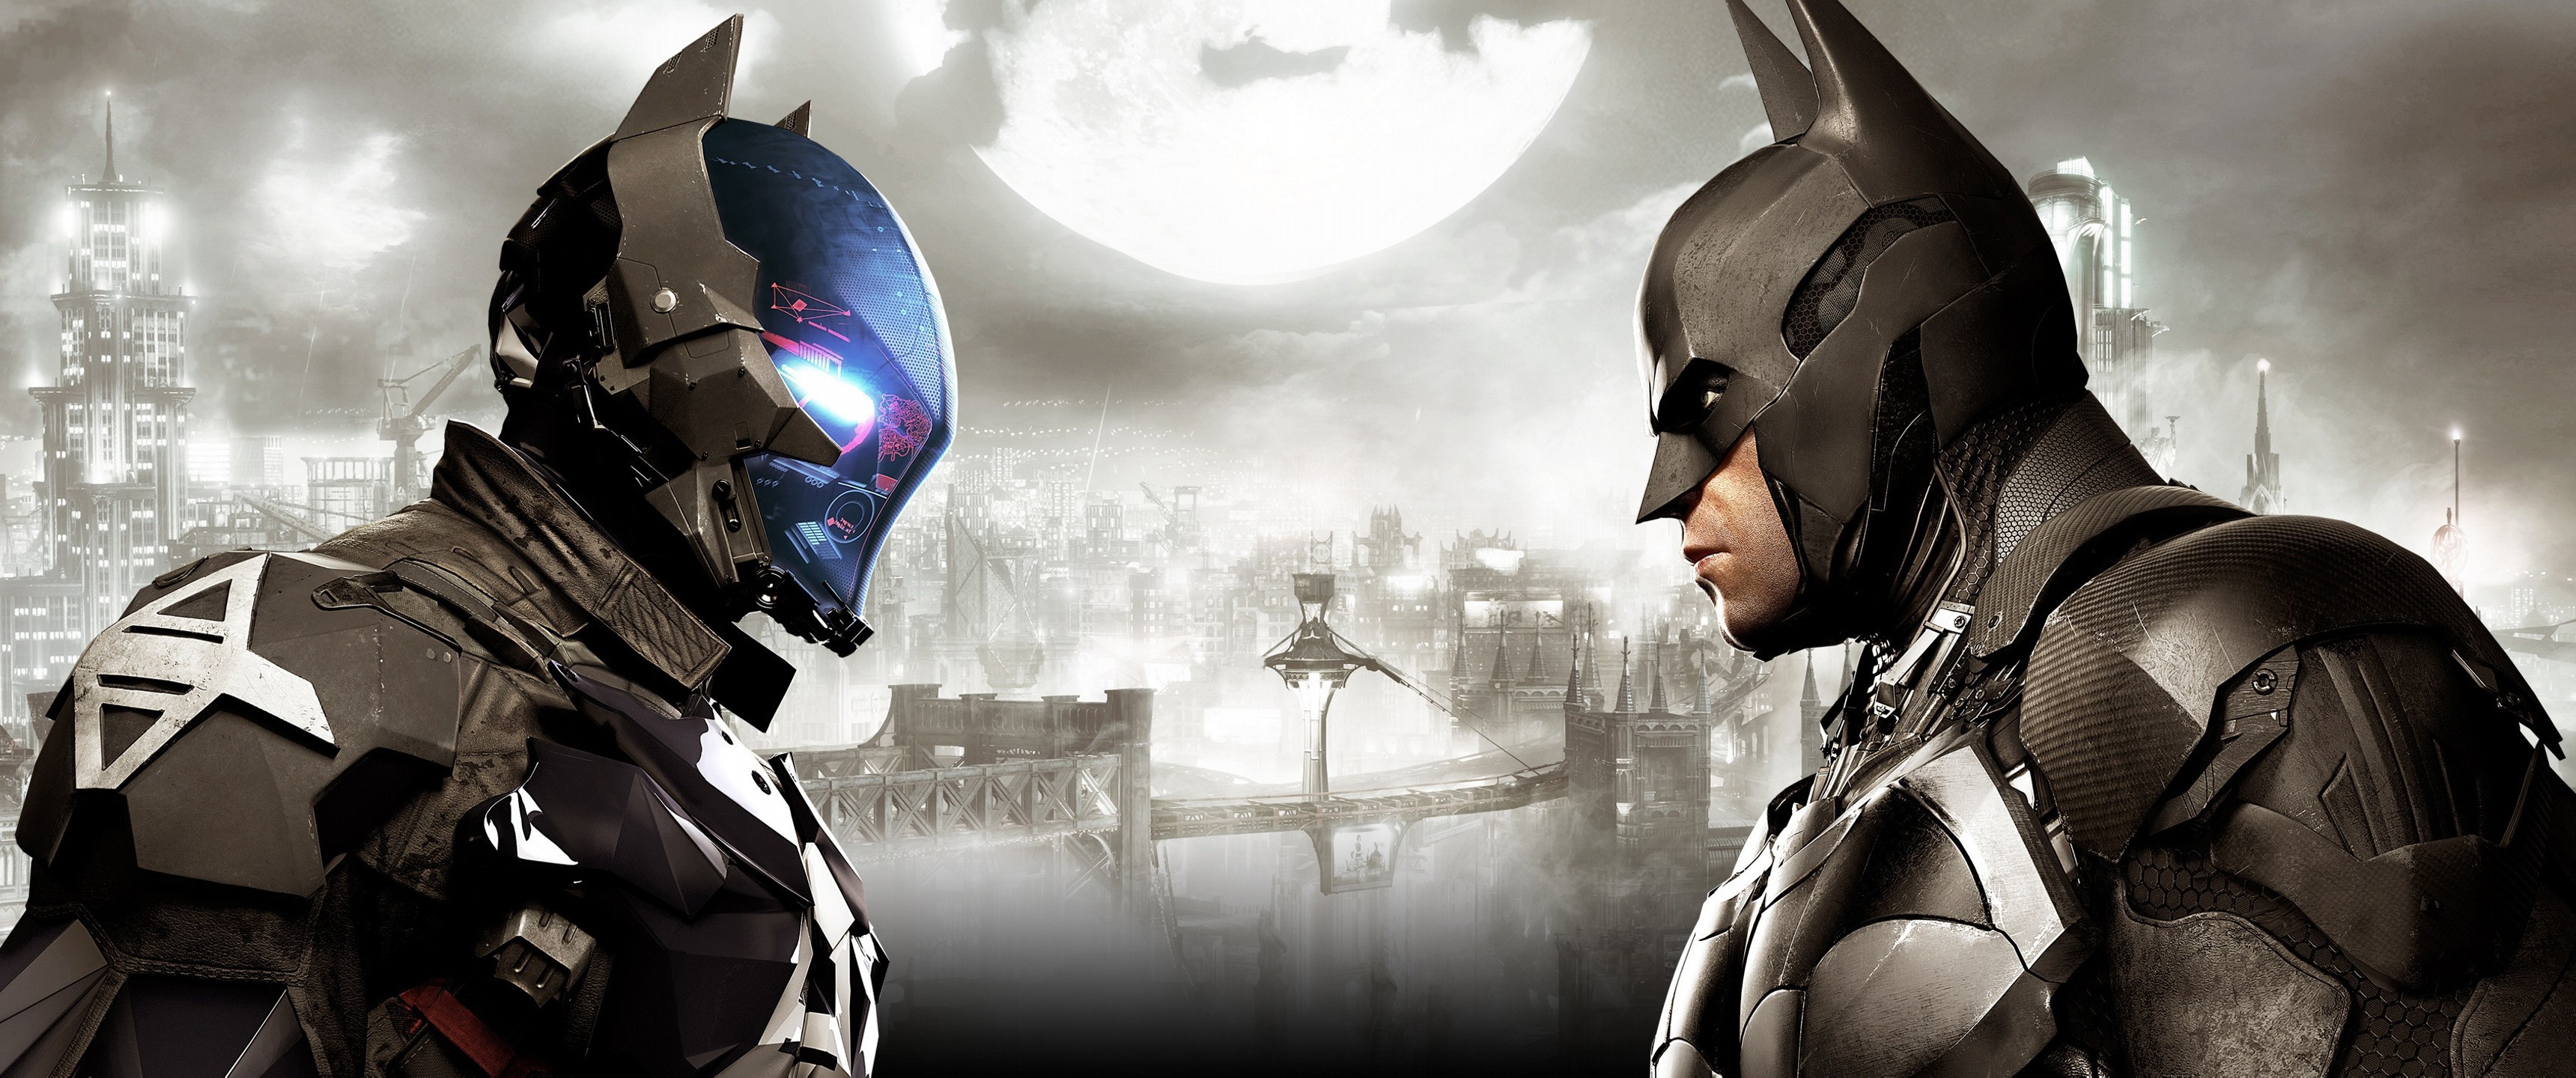 batman arkham knight fondo de pantalla,juego de acción y aventura,personaje de ficción,hombre murciélago,cg artwork,superhéroe